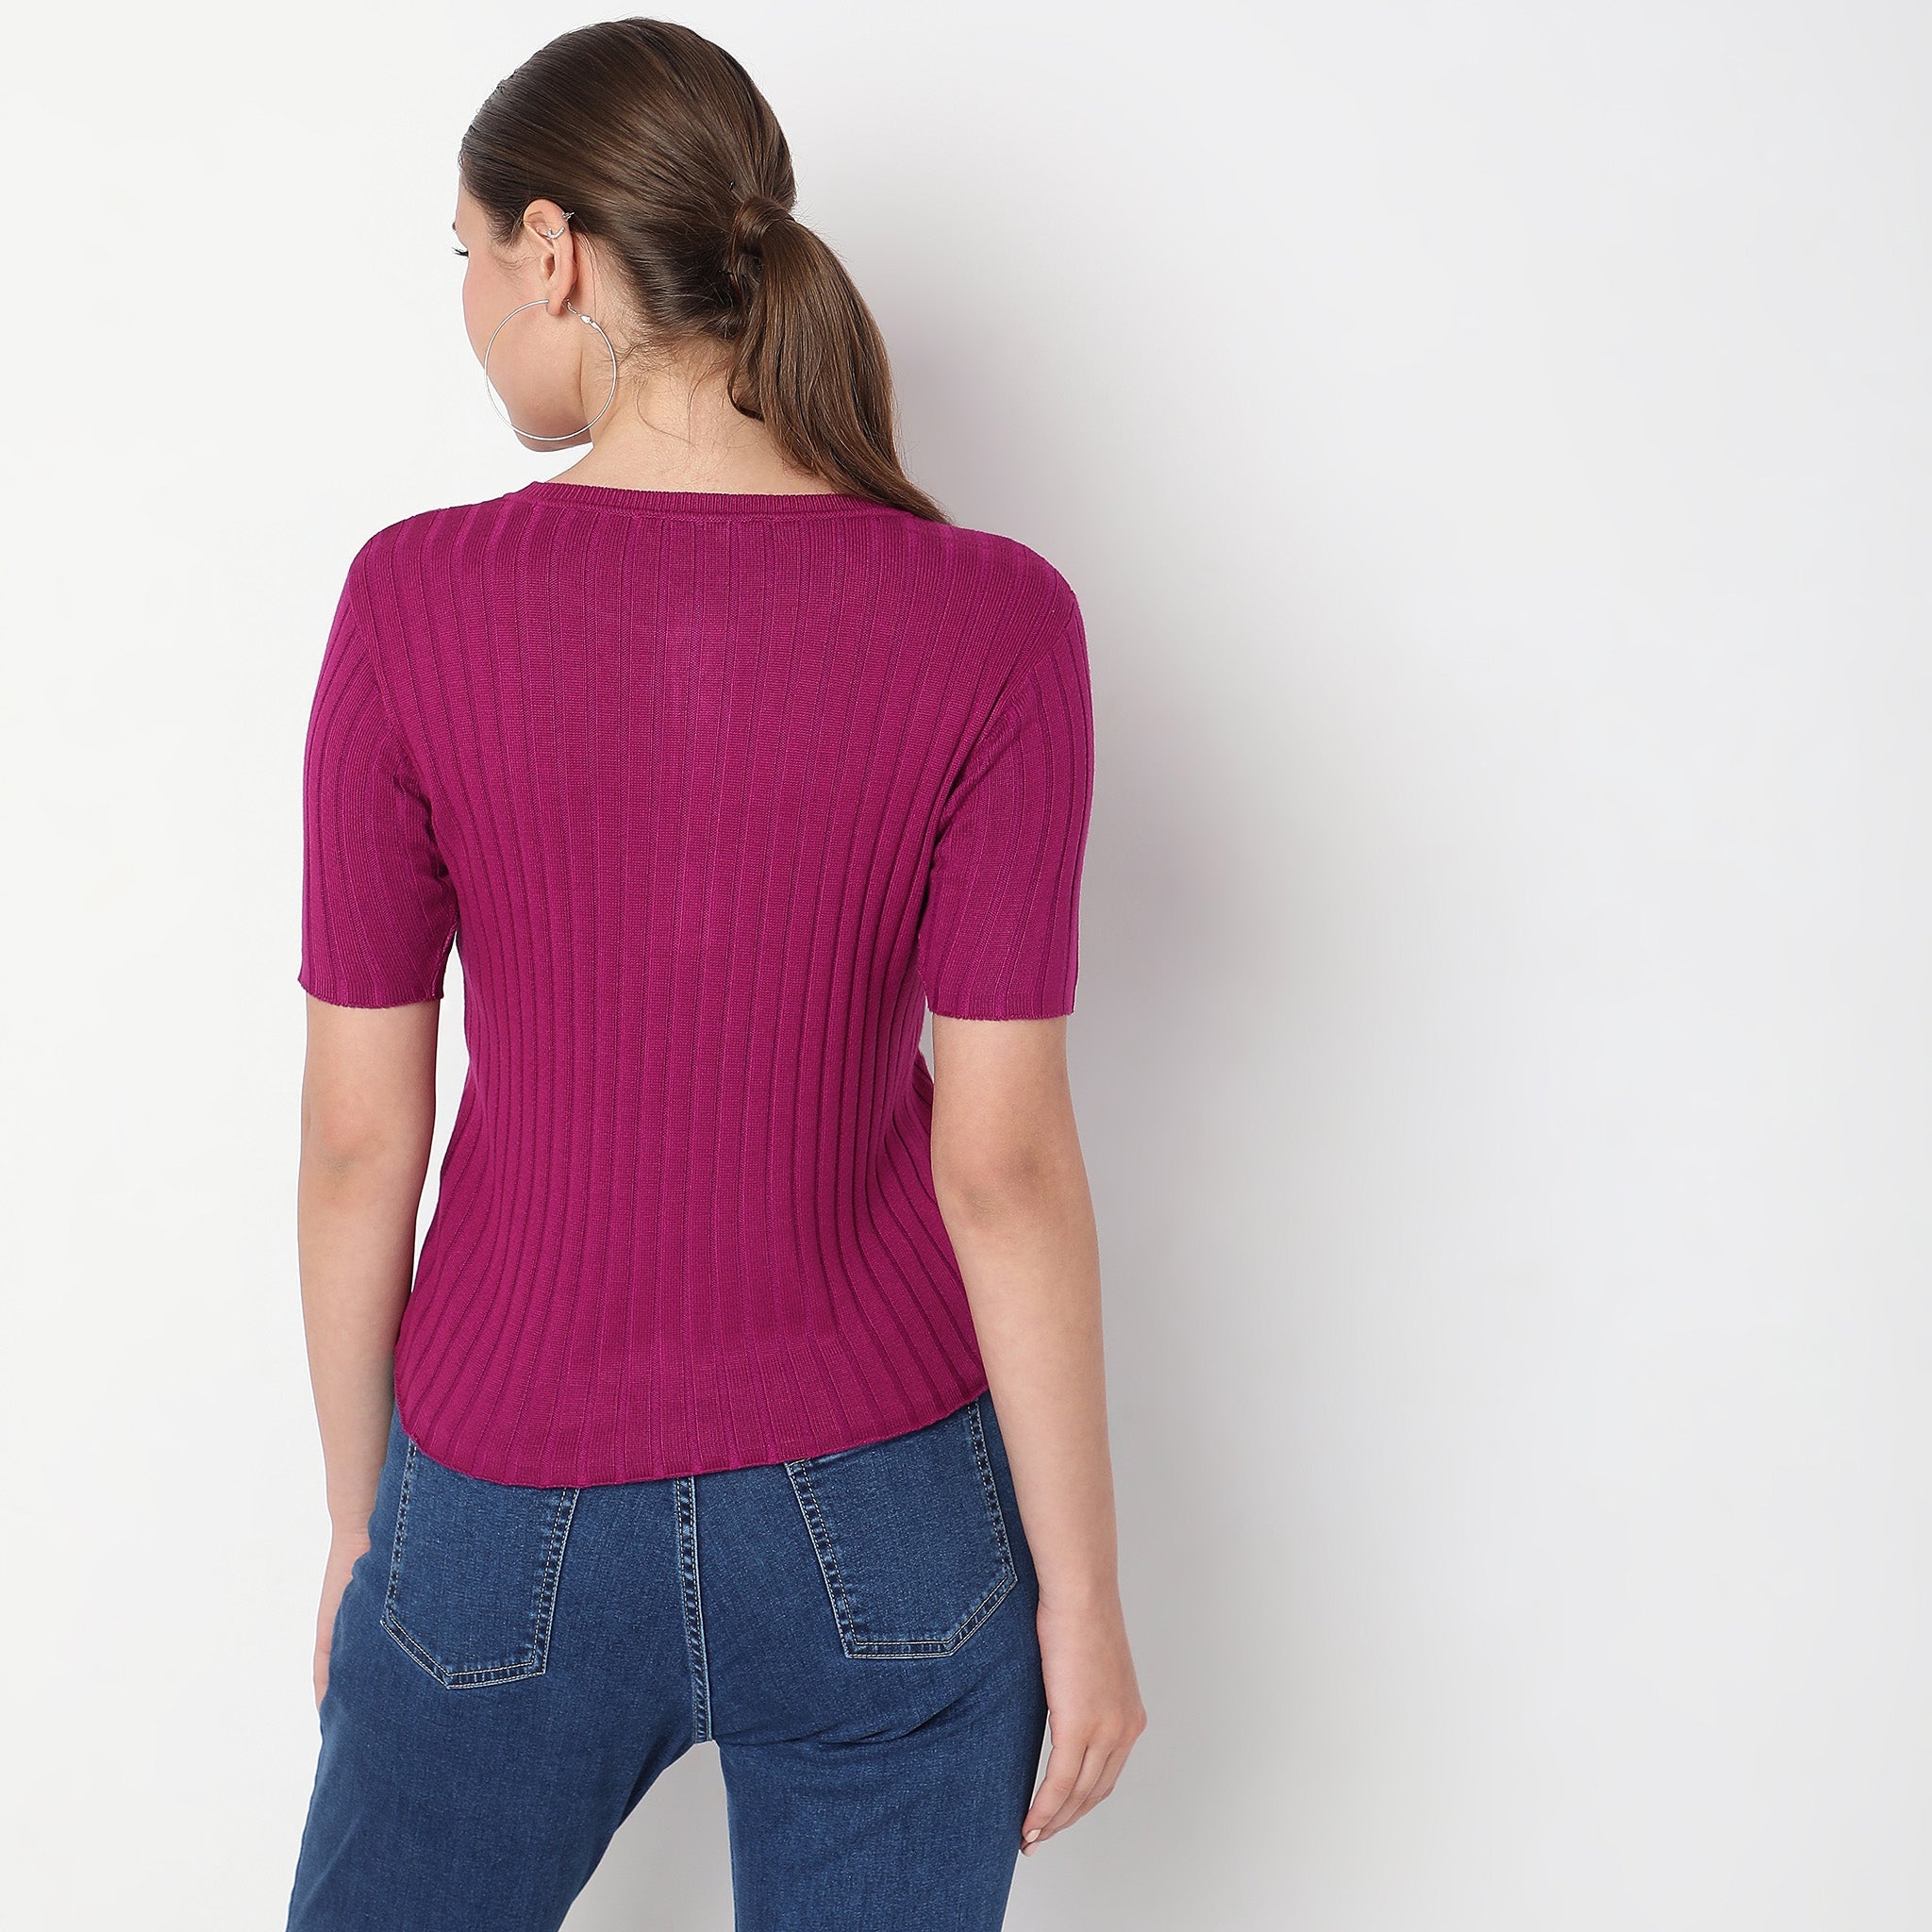 Women Wearing Slim Fit Solid Sweater